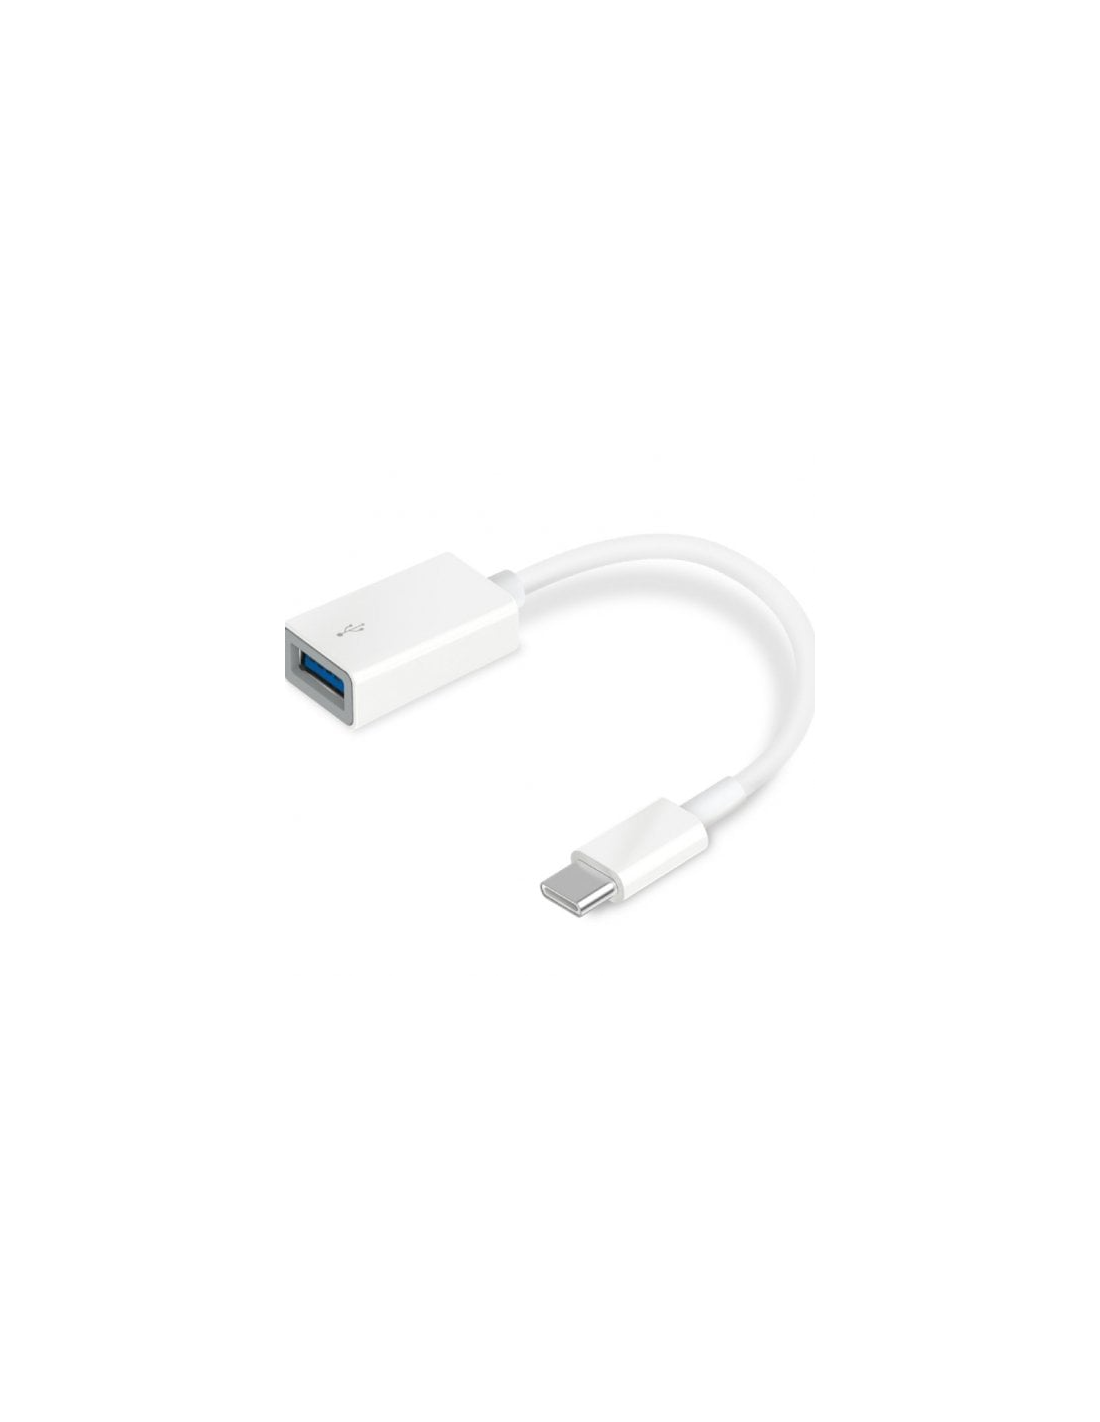 Comprá Adaptador TP-Link UC400 USB-C 3.0 a USB-A - Envios a todo